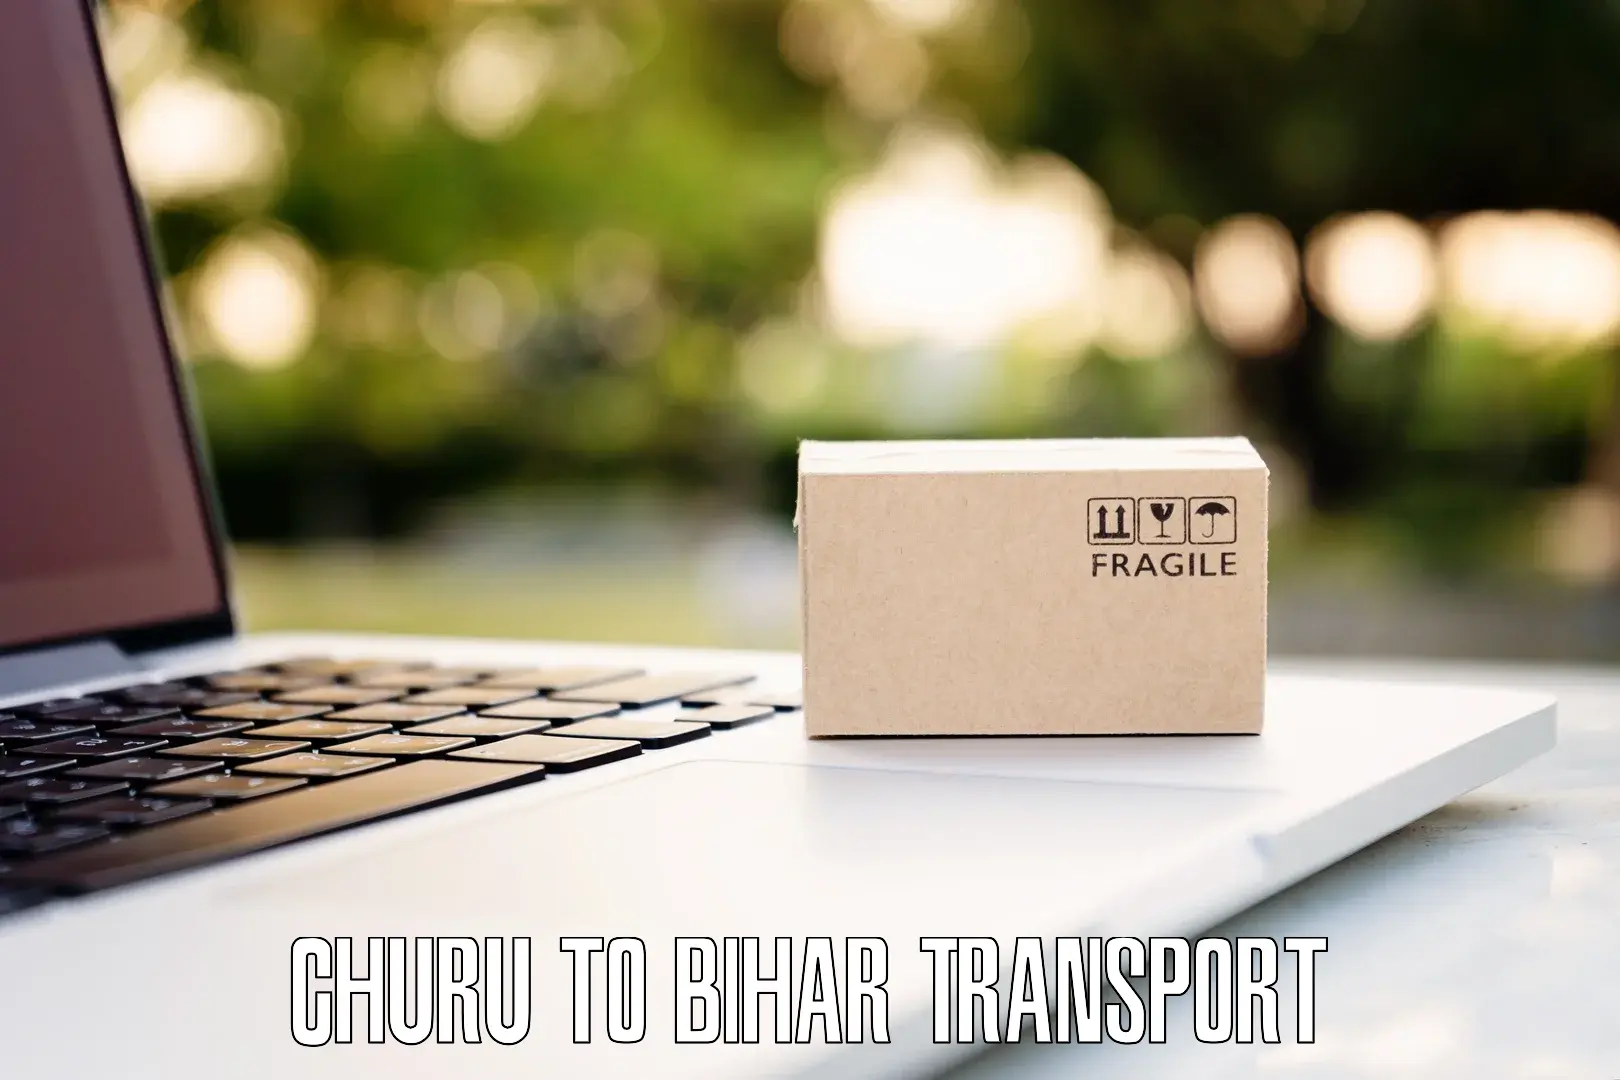 Interstate goods transport Churu to Darbhanga